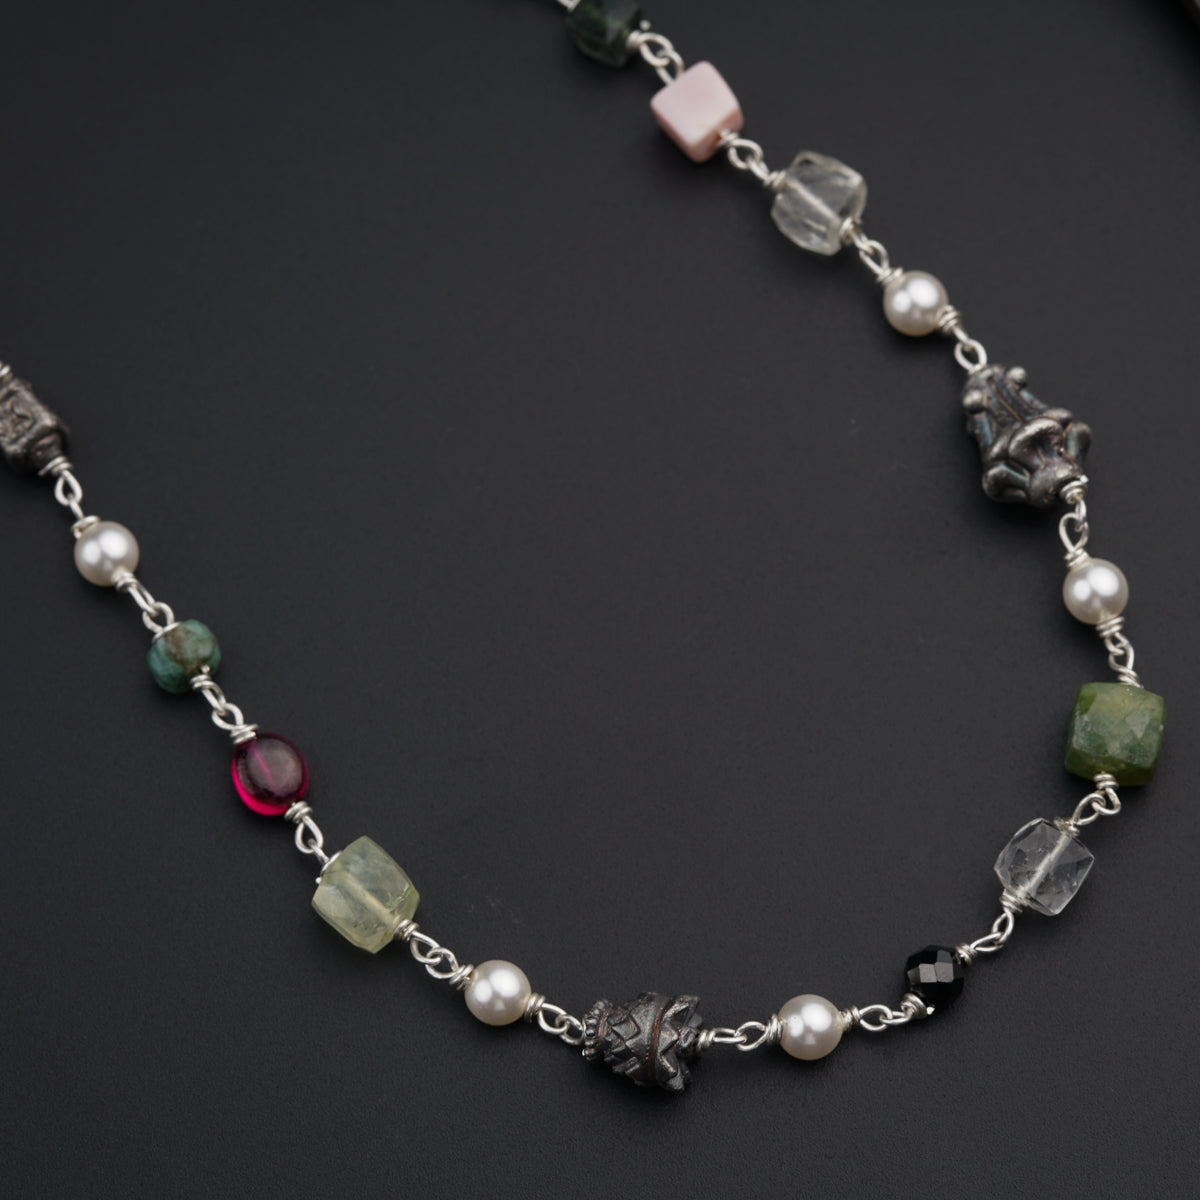 Semi Precious Multicolor Stones and Silver Beads Necklace / Chain